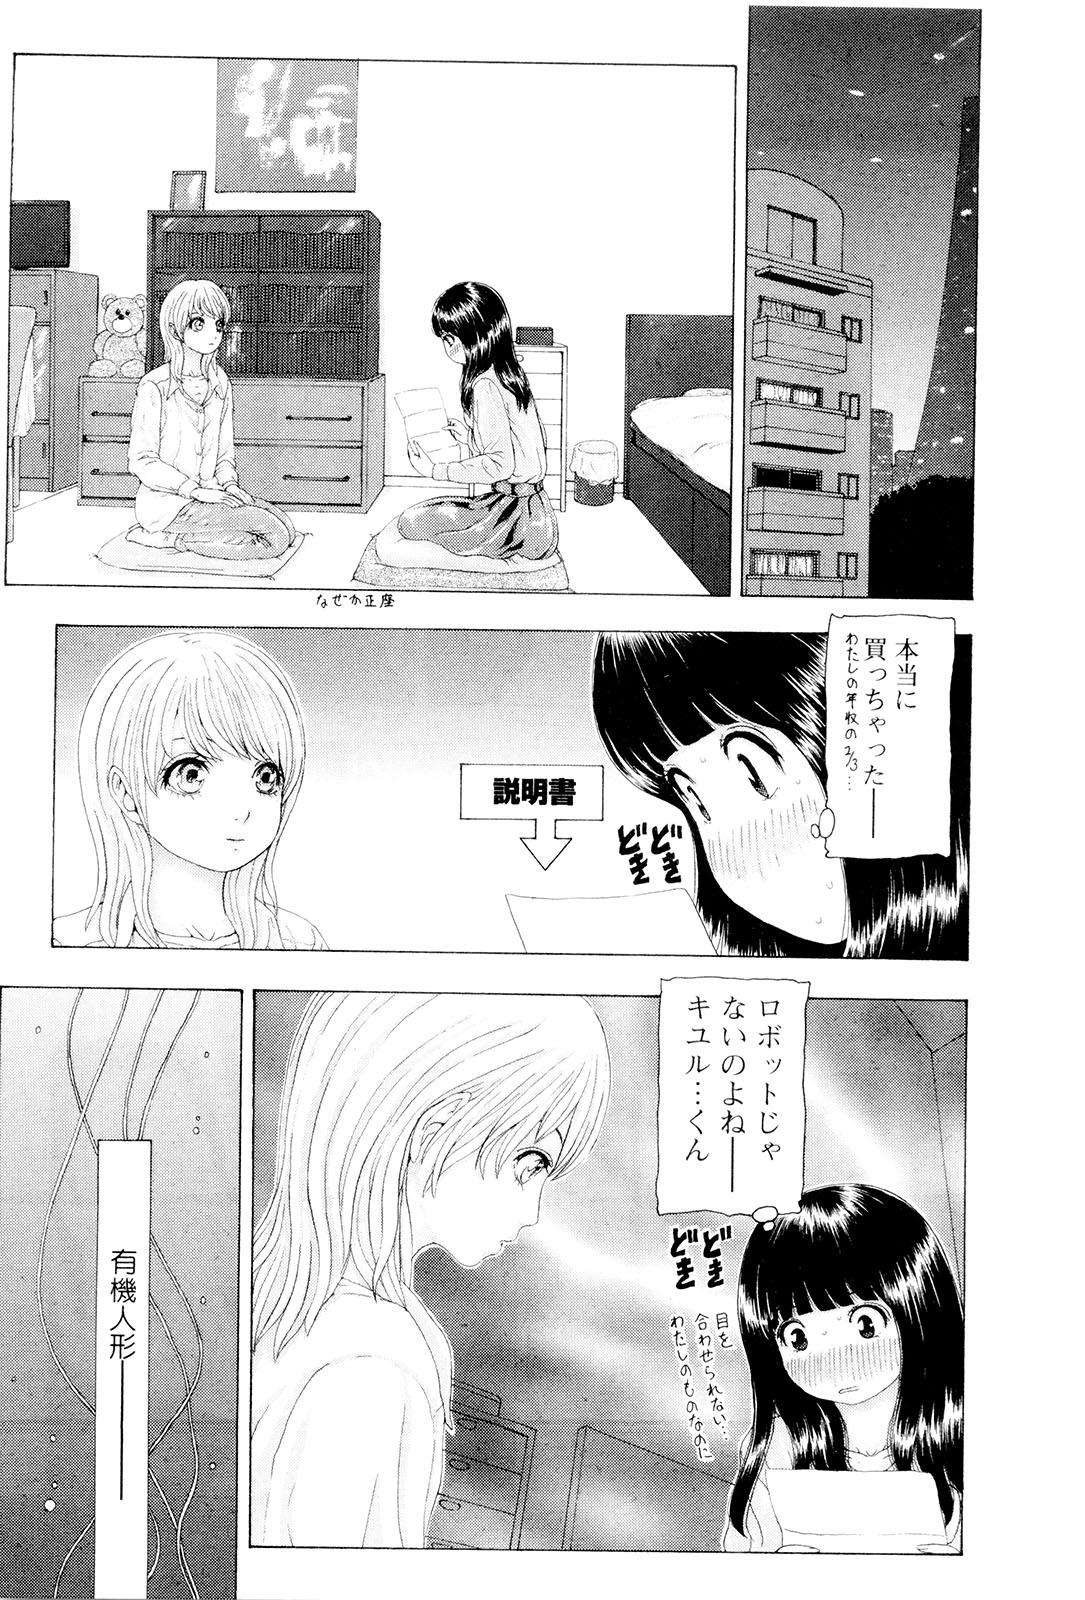 Spread Kono Sekai niwa Yuuki Ningyou ga Iru Ethnic - Page 8